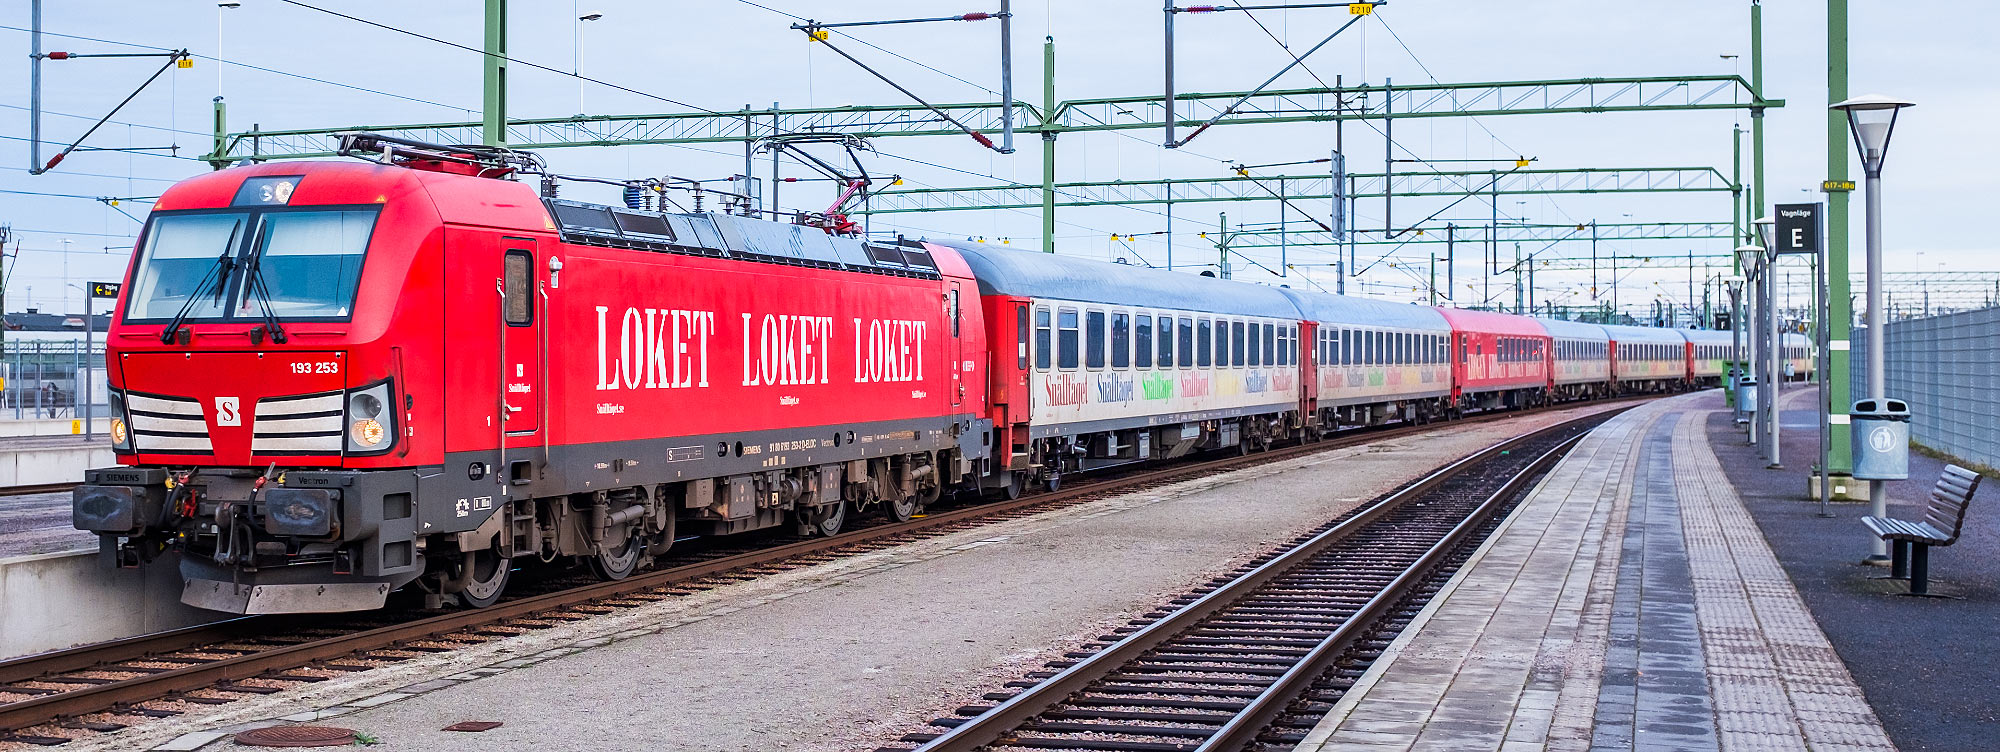 Bild: Tåg 3941 Stockholm-Malmö bestående av ett 193-lok och Bmpz- och WRbmz-vagnar ankommer Malmö 27 december 2017